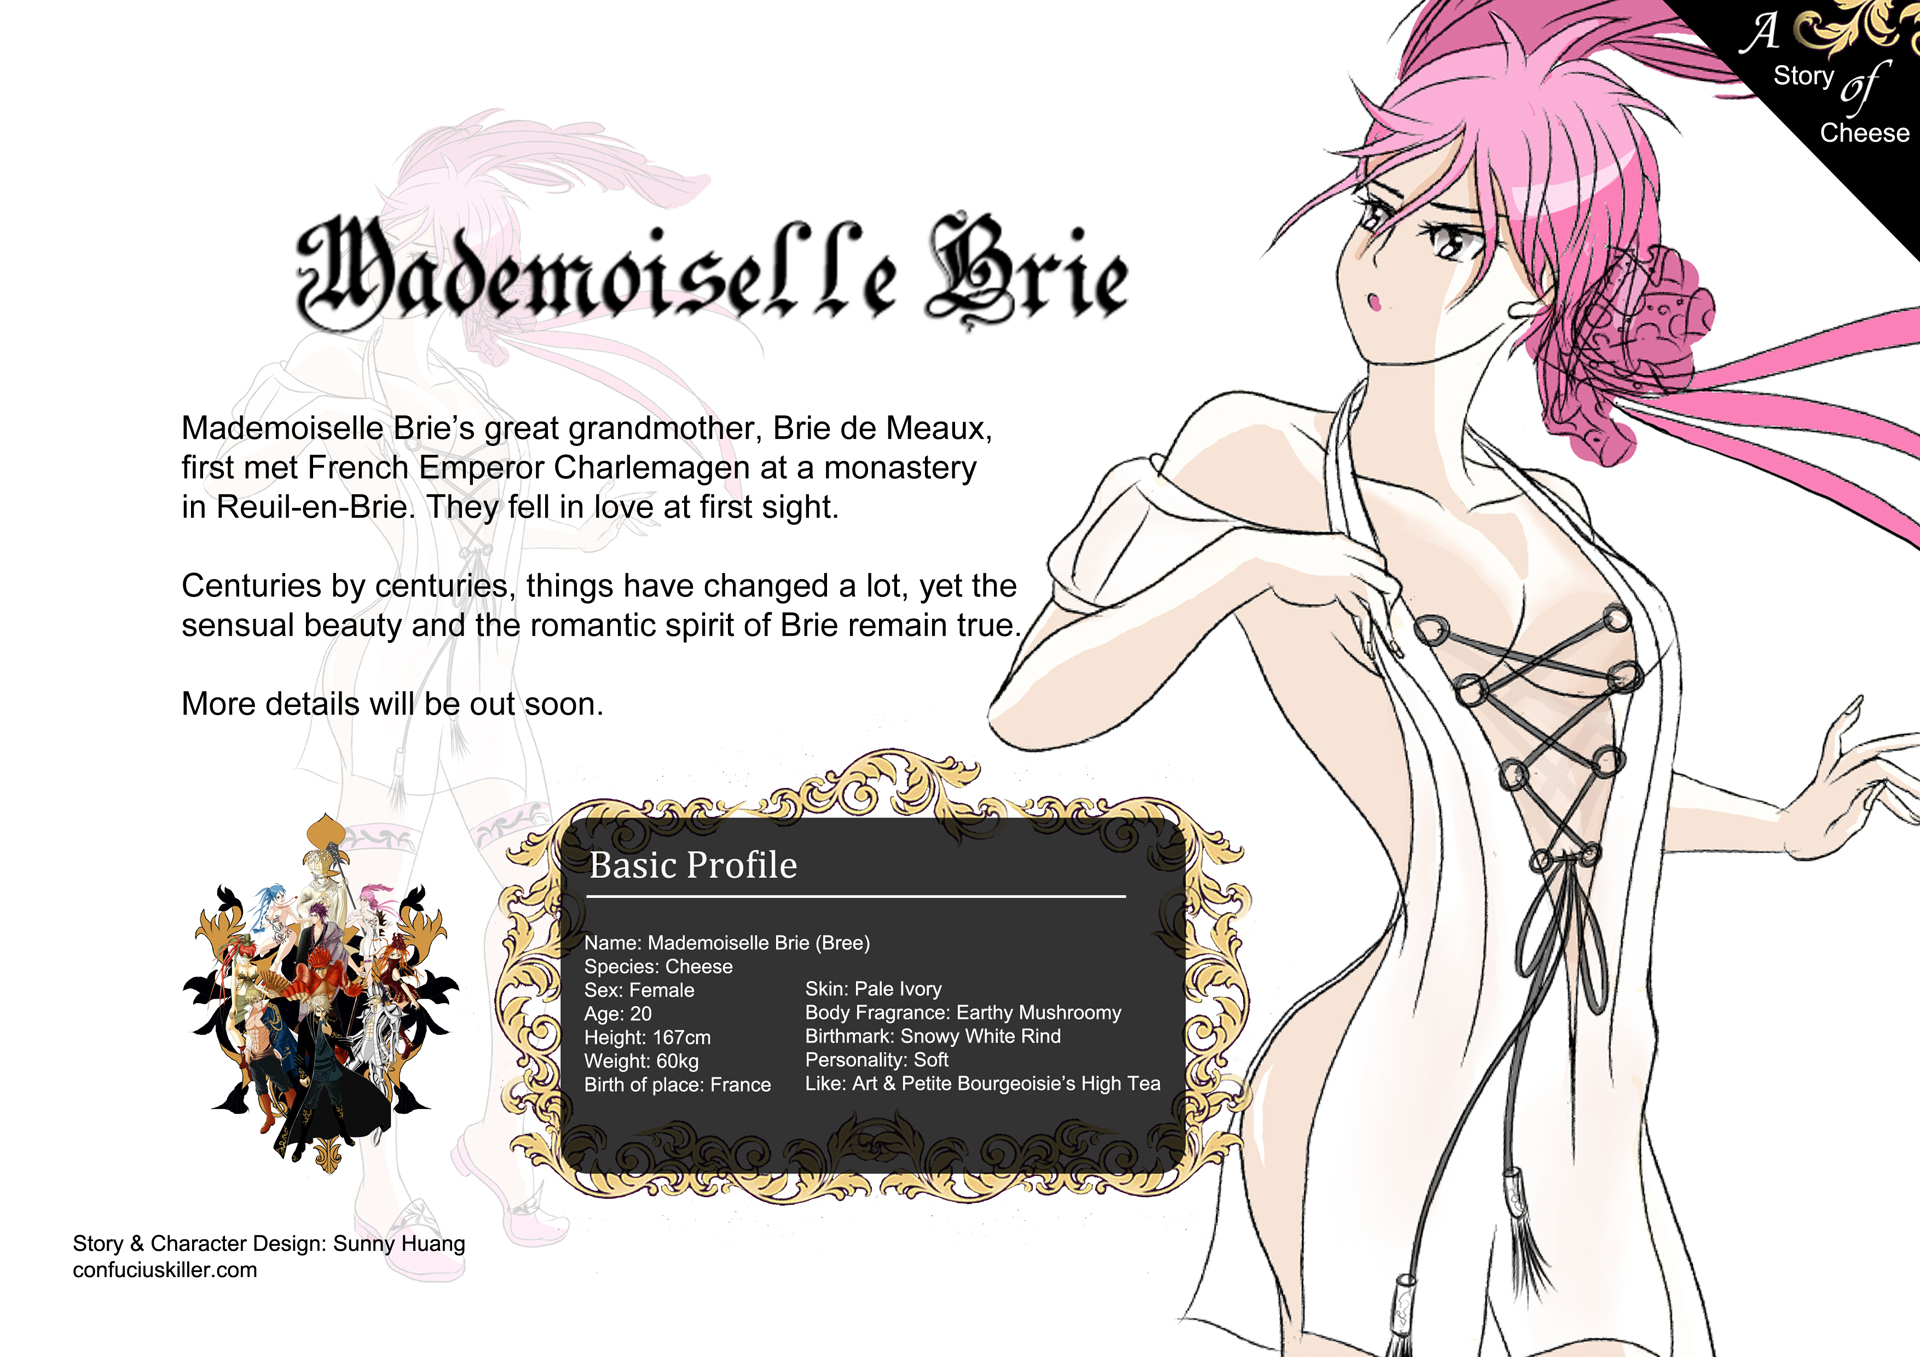 Mademoiselle Brie